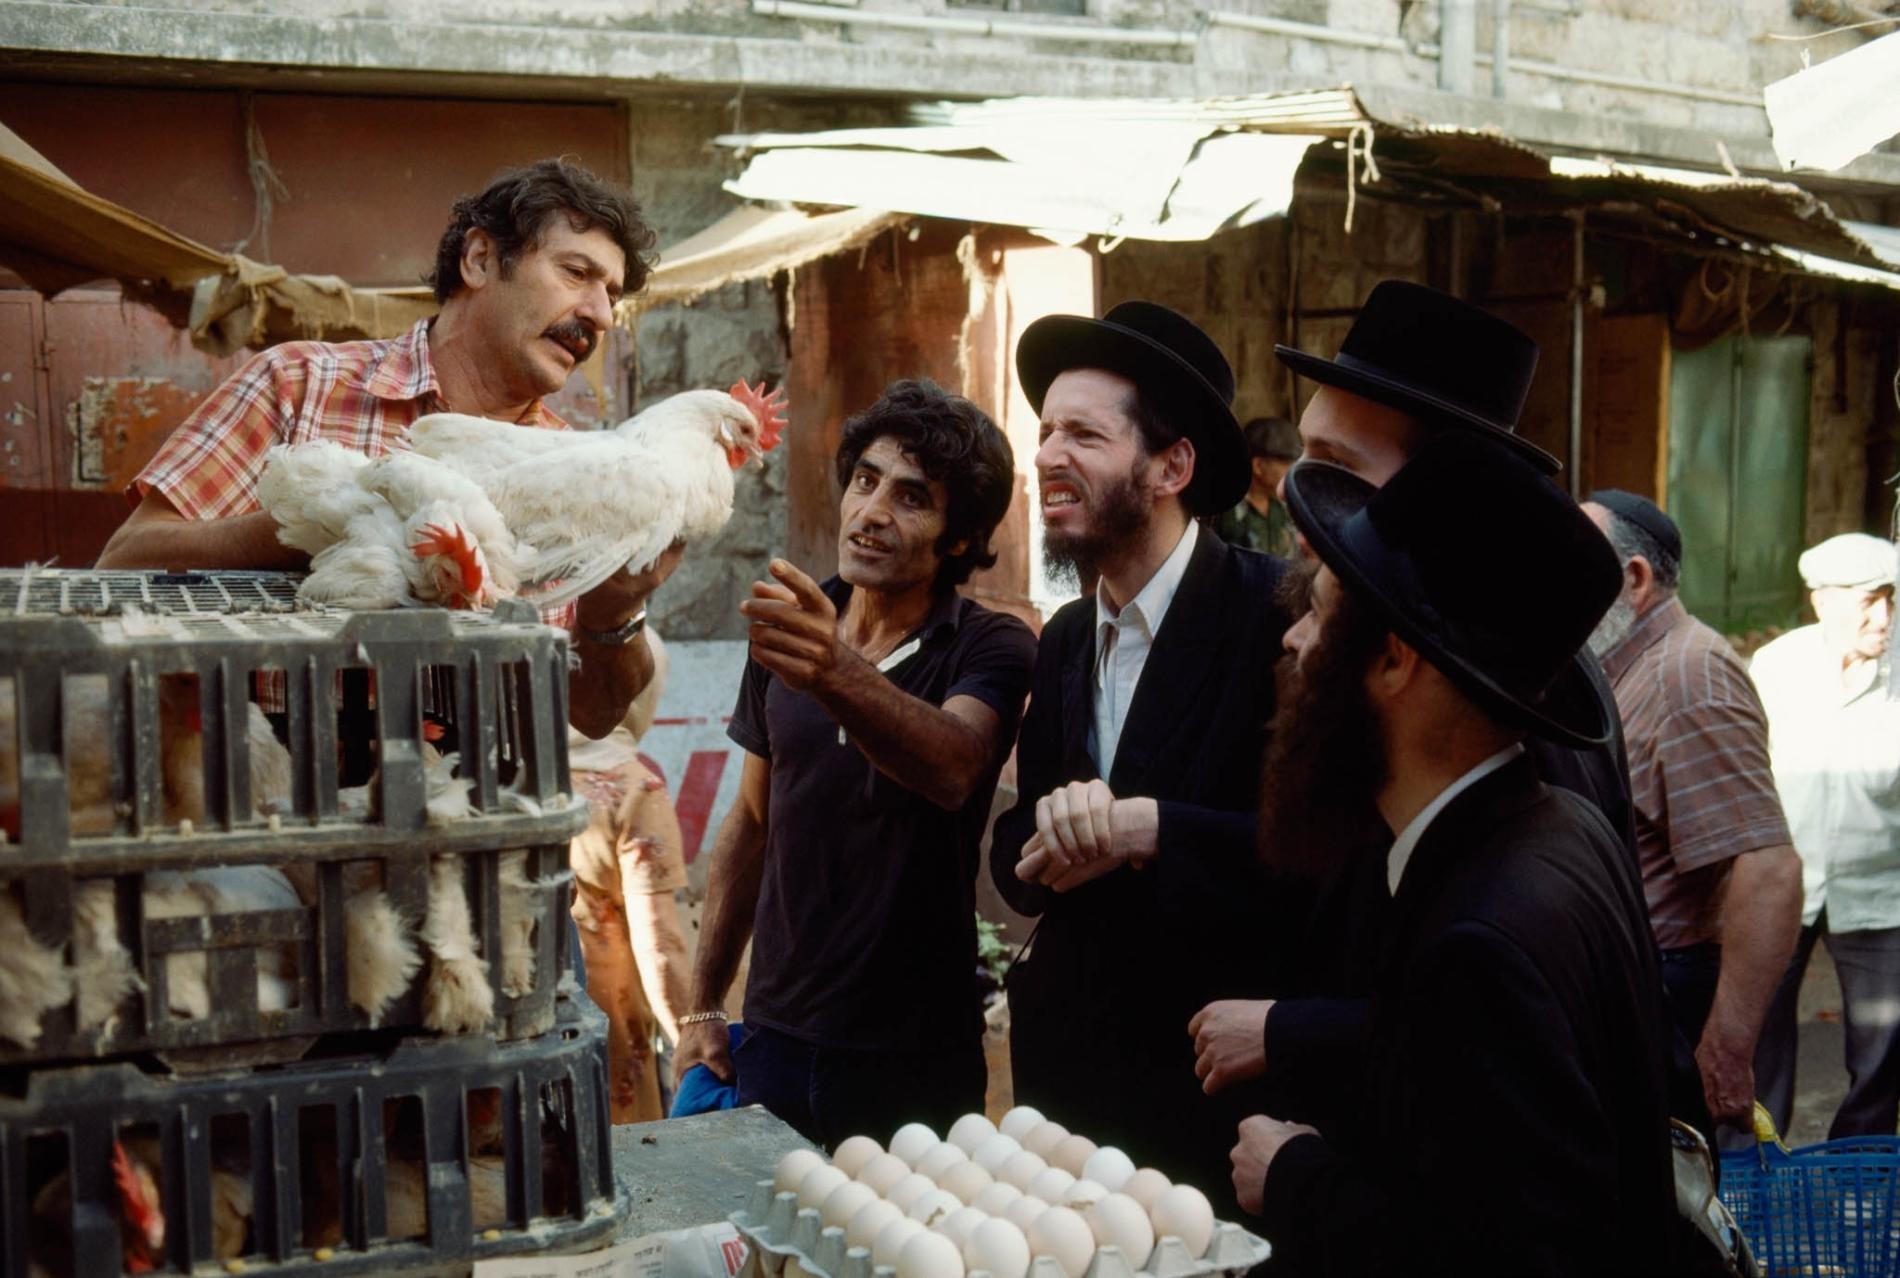 Хасиды выбирают курицу для обряда капарот накануне Йом-Киппура. Рынок в Иерусалиме. Фотограф Джеймс Л. Стенфилд